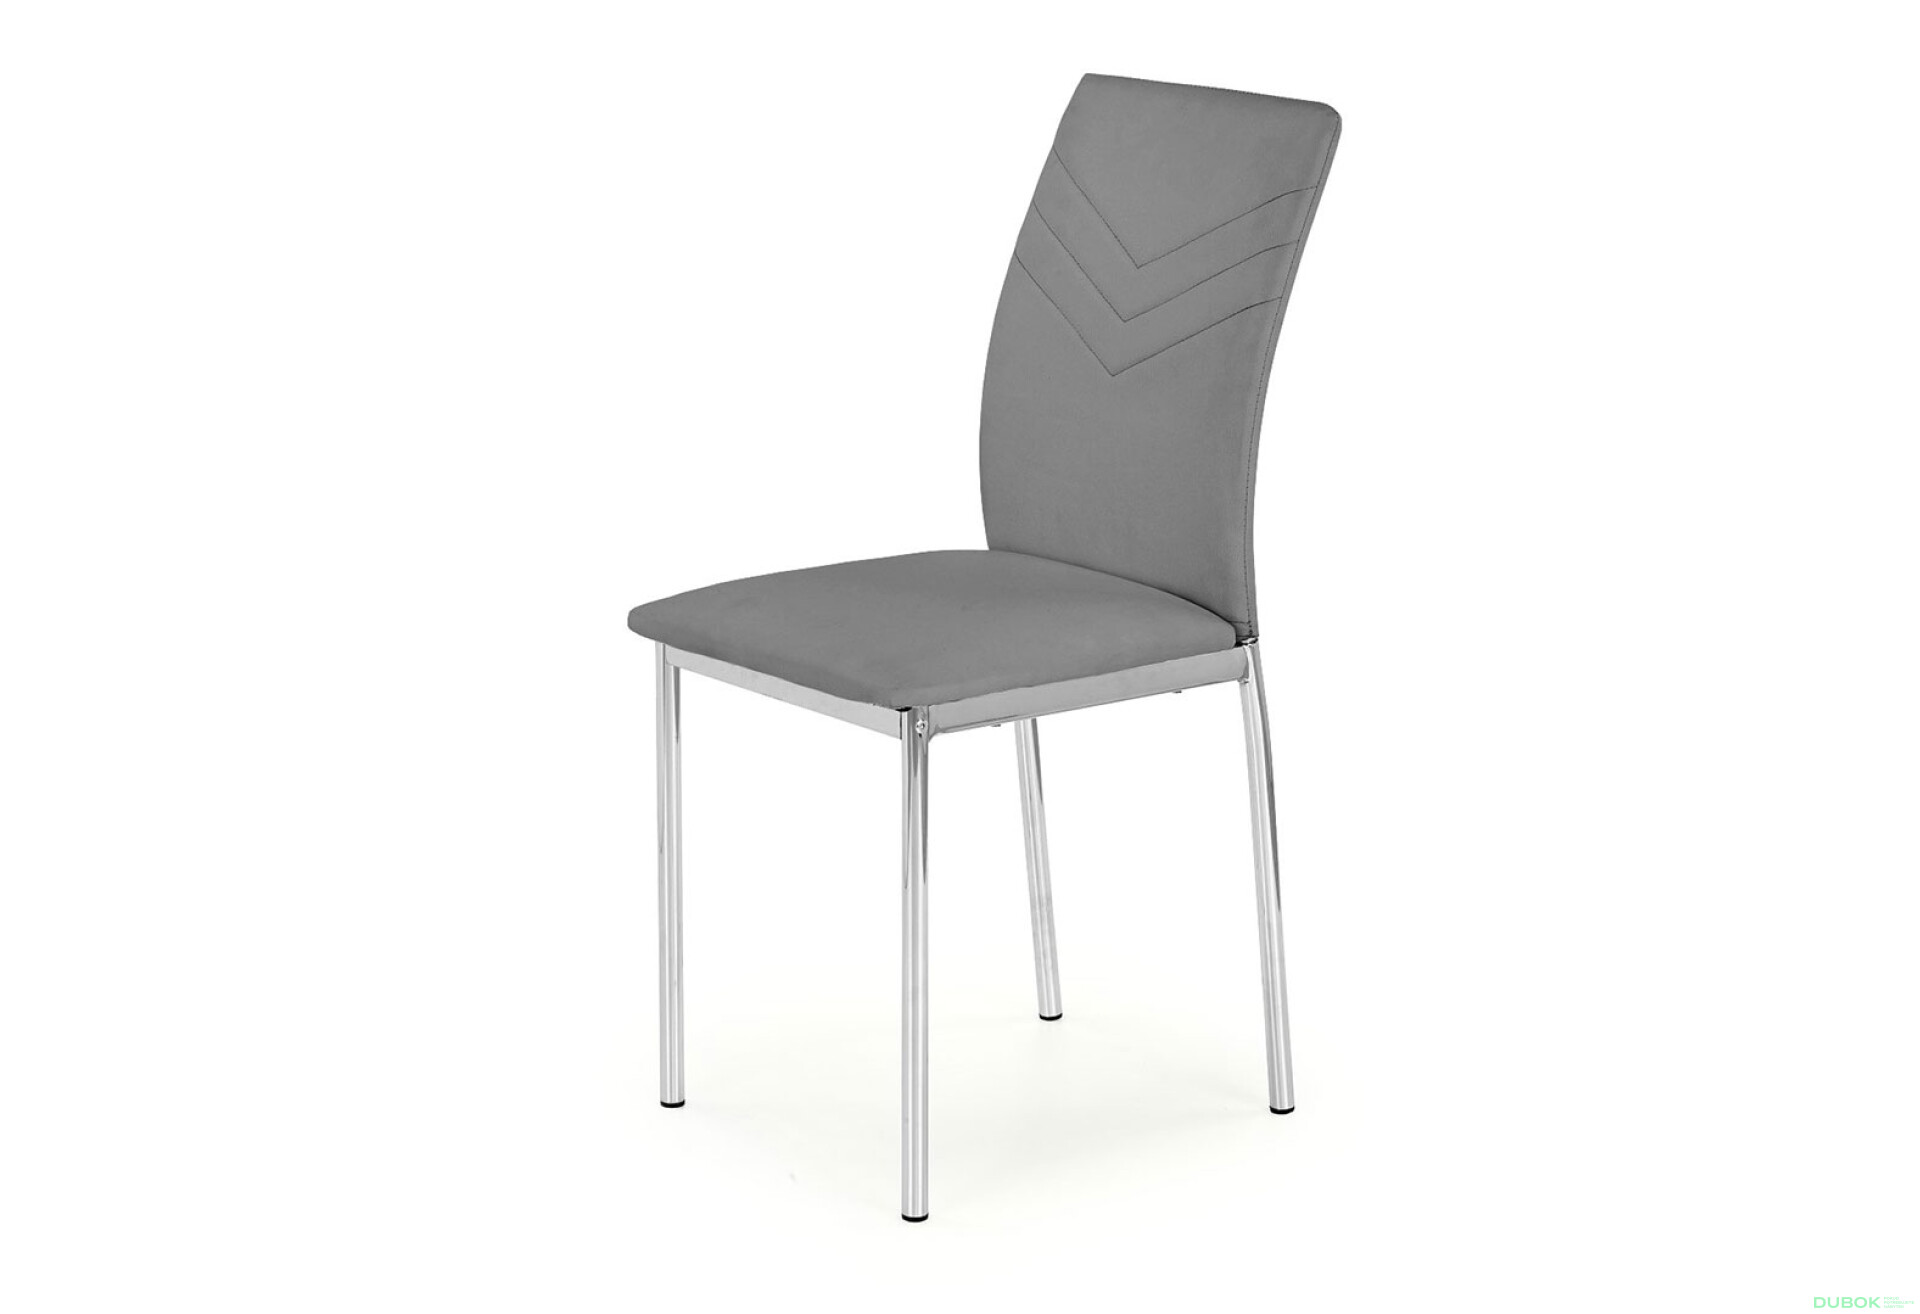 Фото 1 - Židle K137 chrom, bílá ekokůže